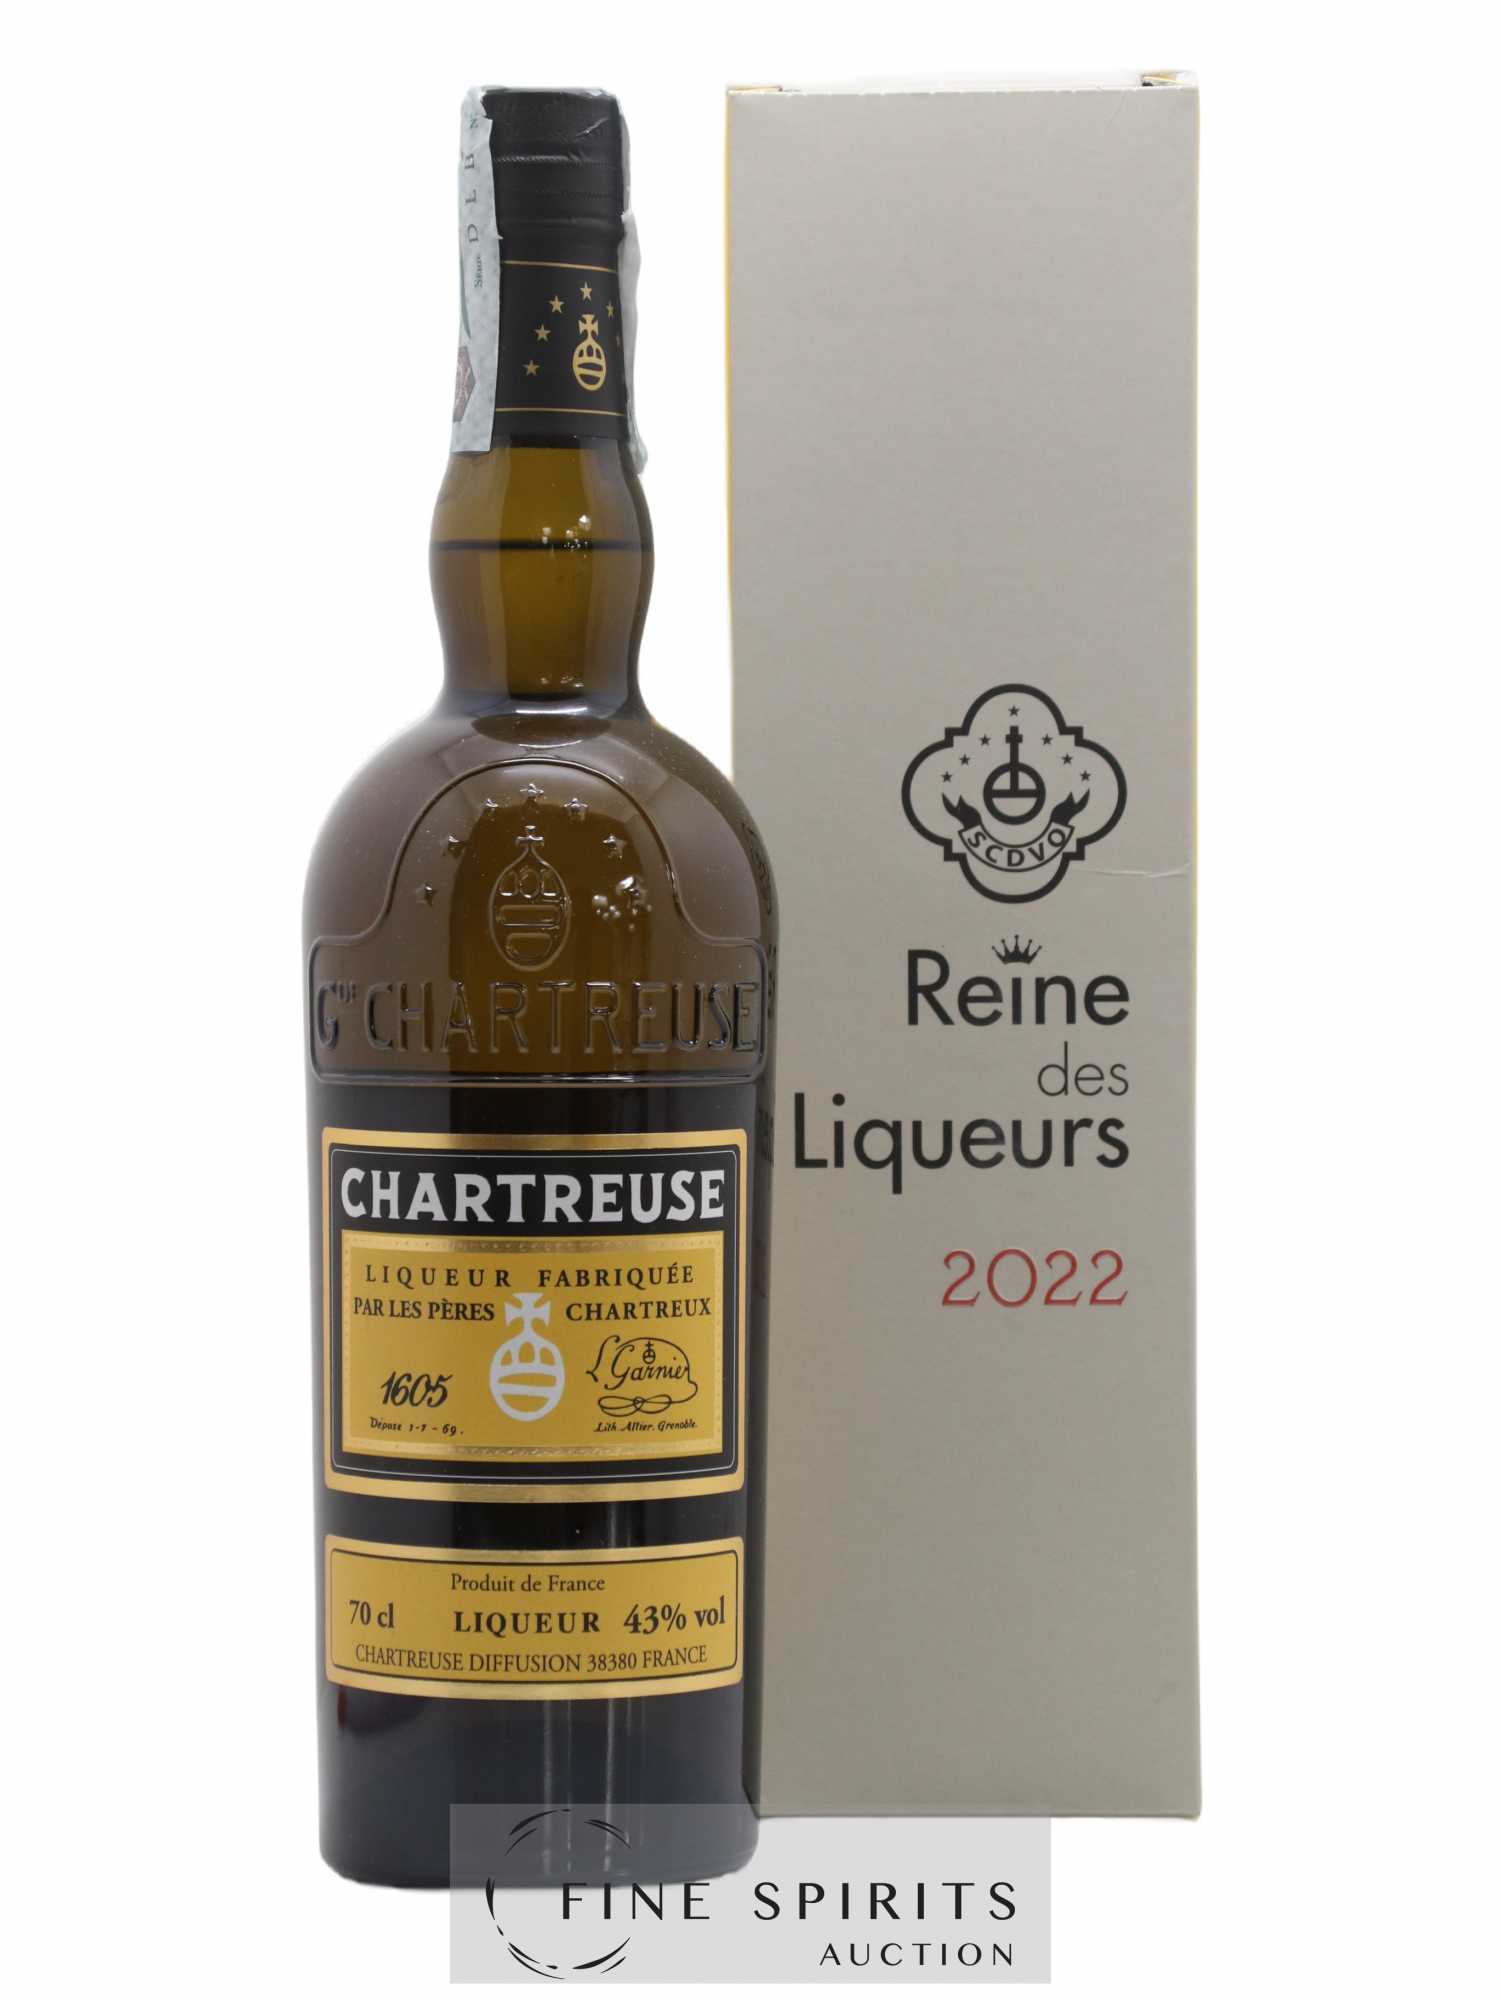 Chartreuse Of. Jaune - Reine des Liqueurs Mise 2022 - 1700 bouteilles 